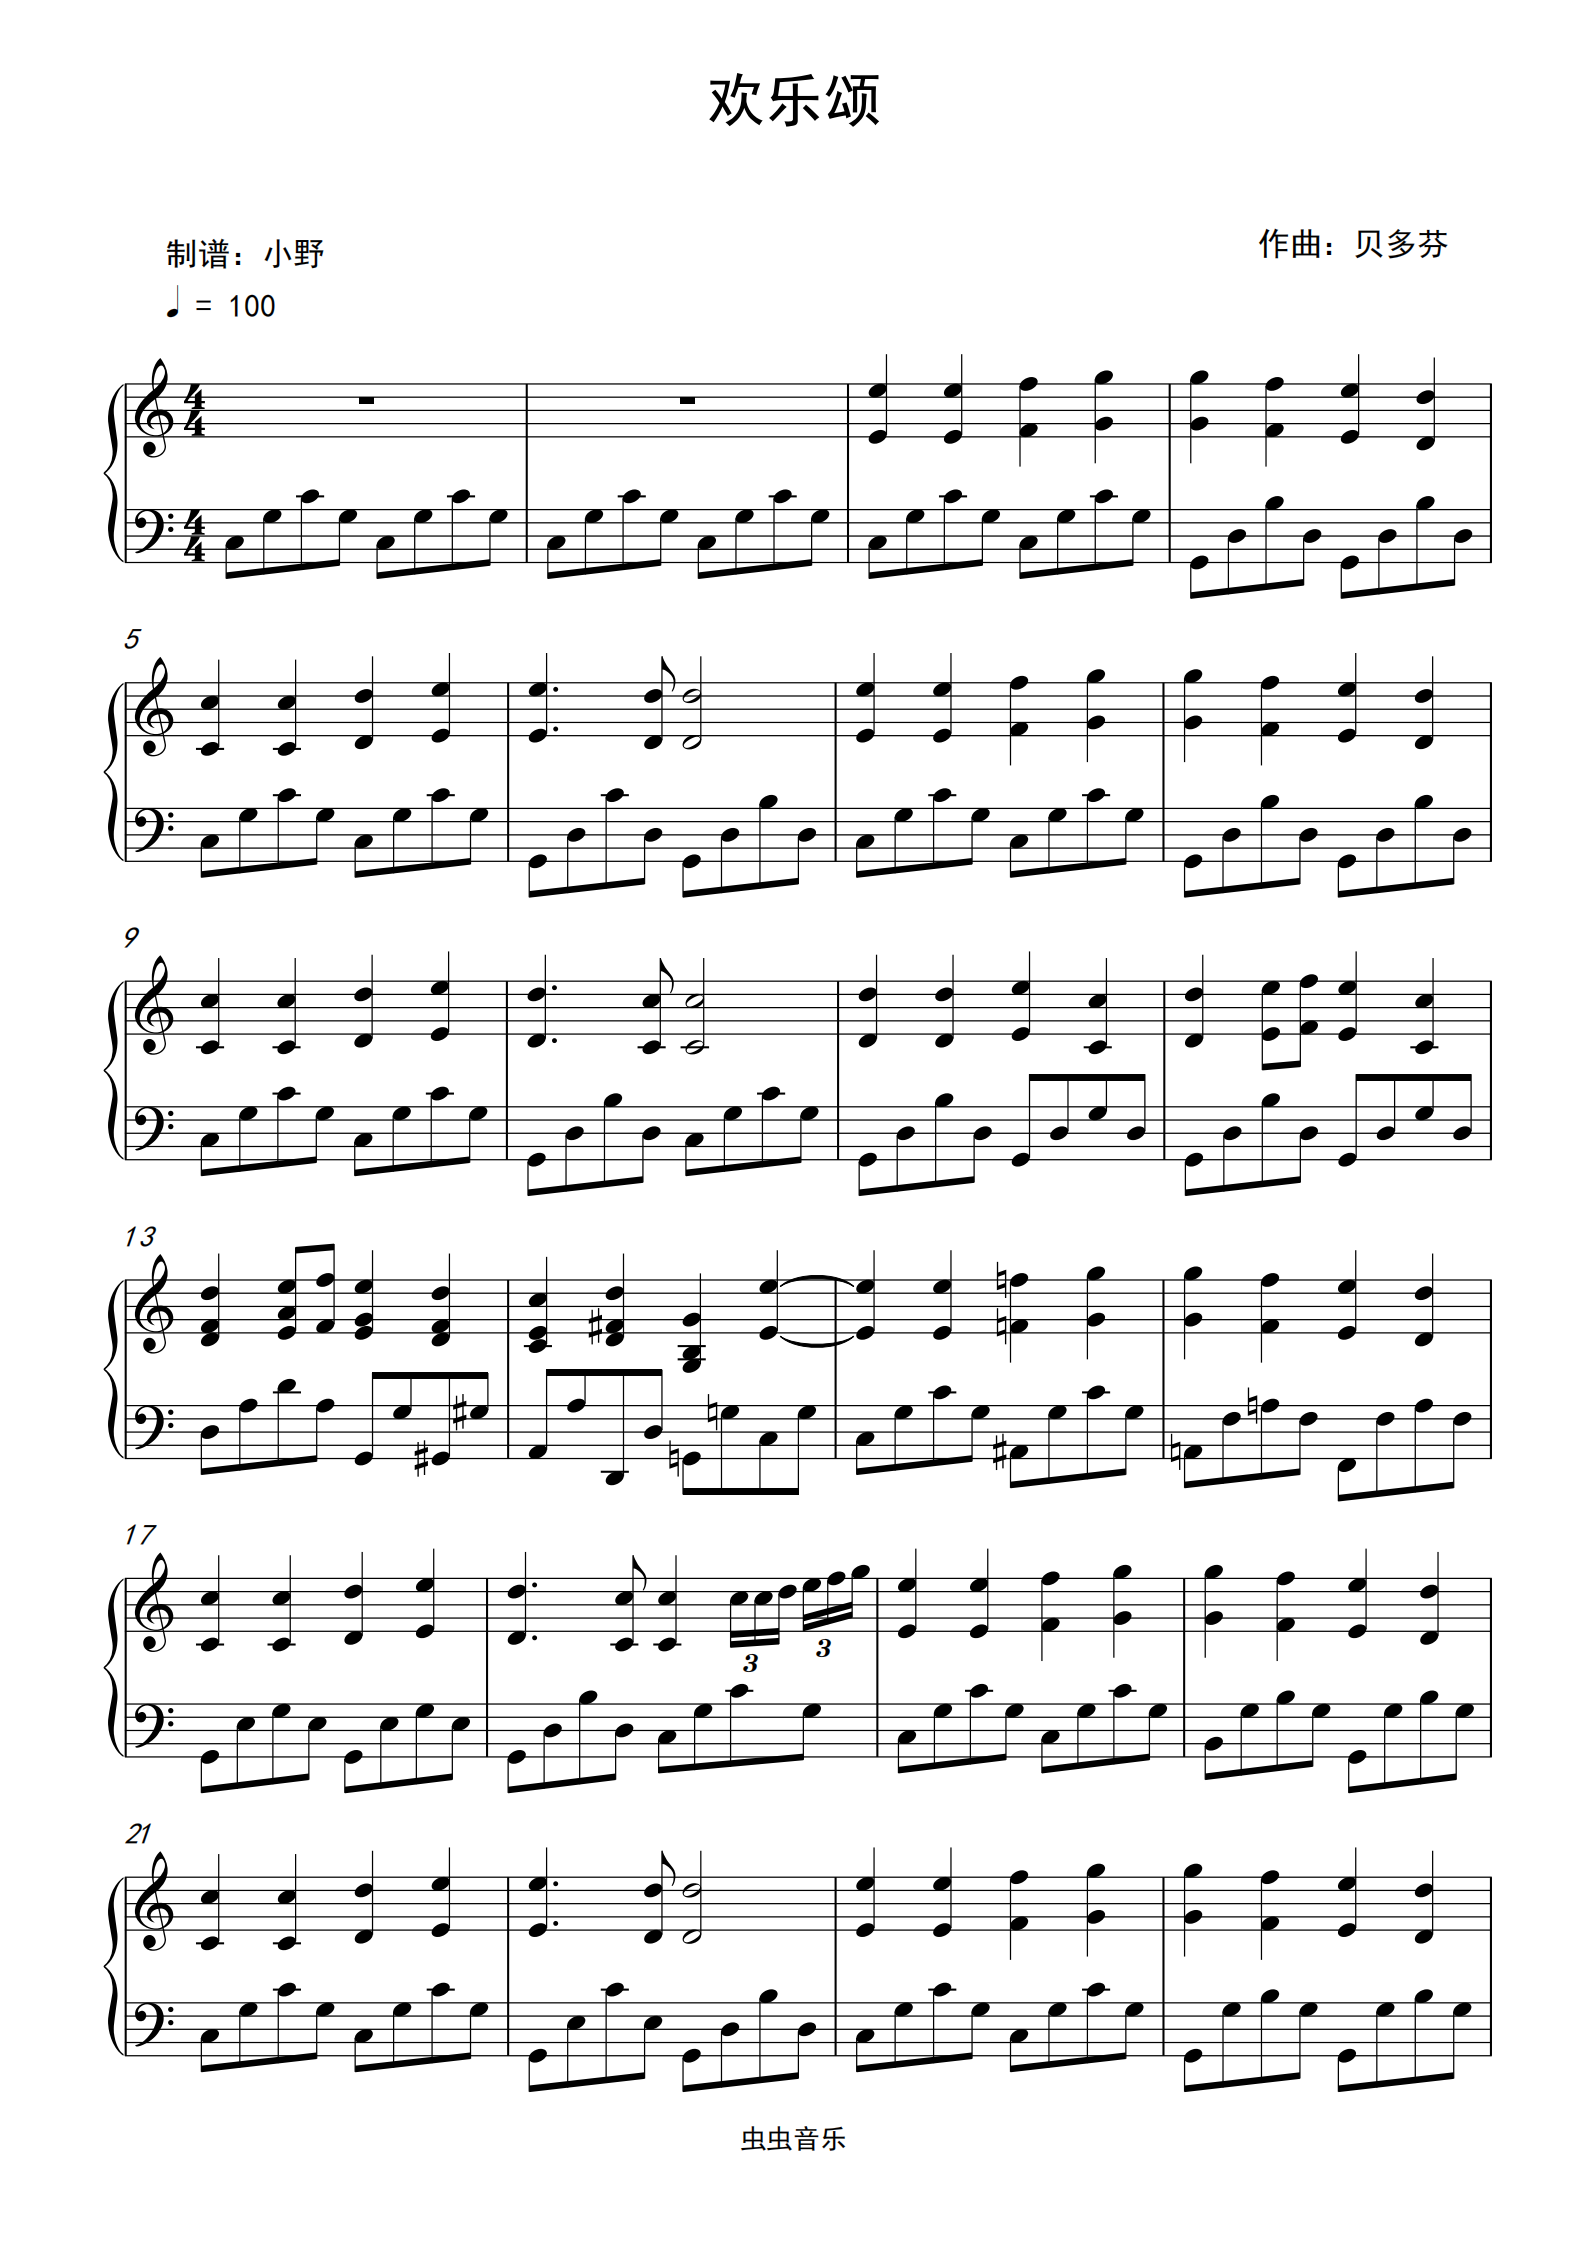 欢乐颂小提琴谱子曲谱图片